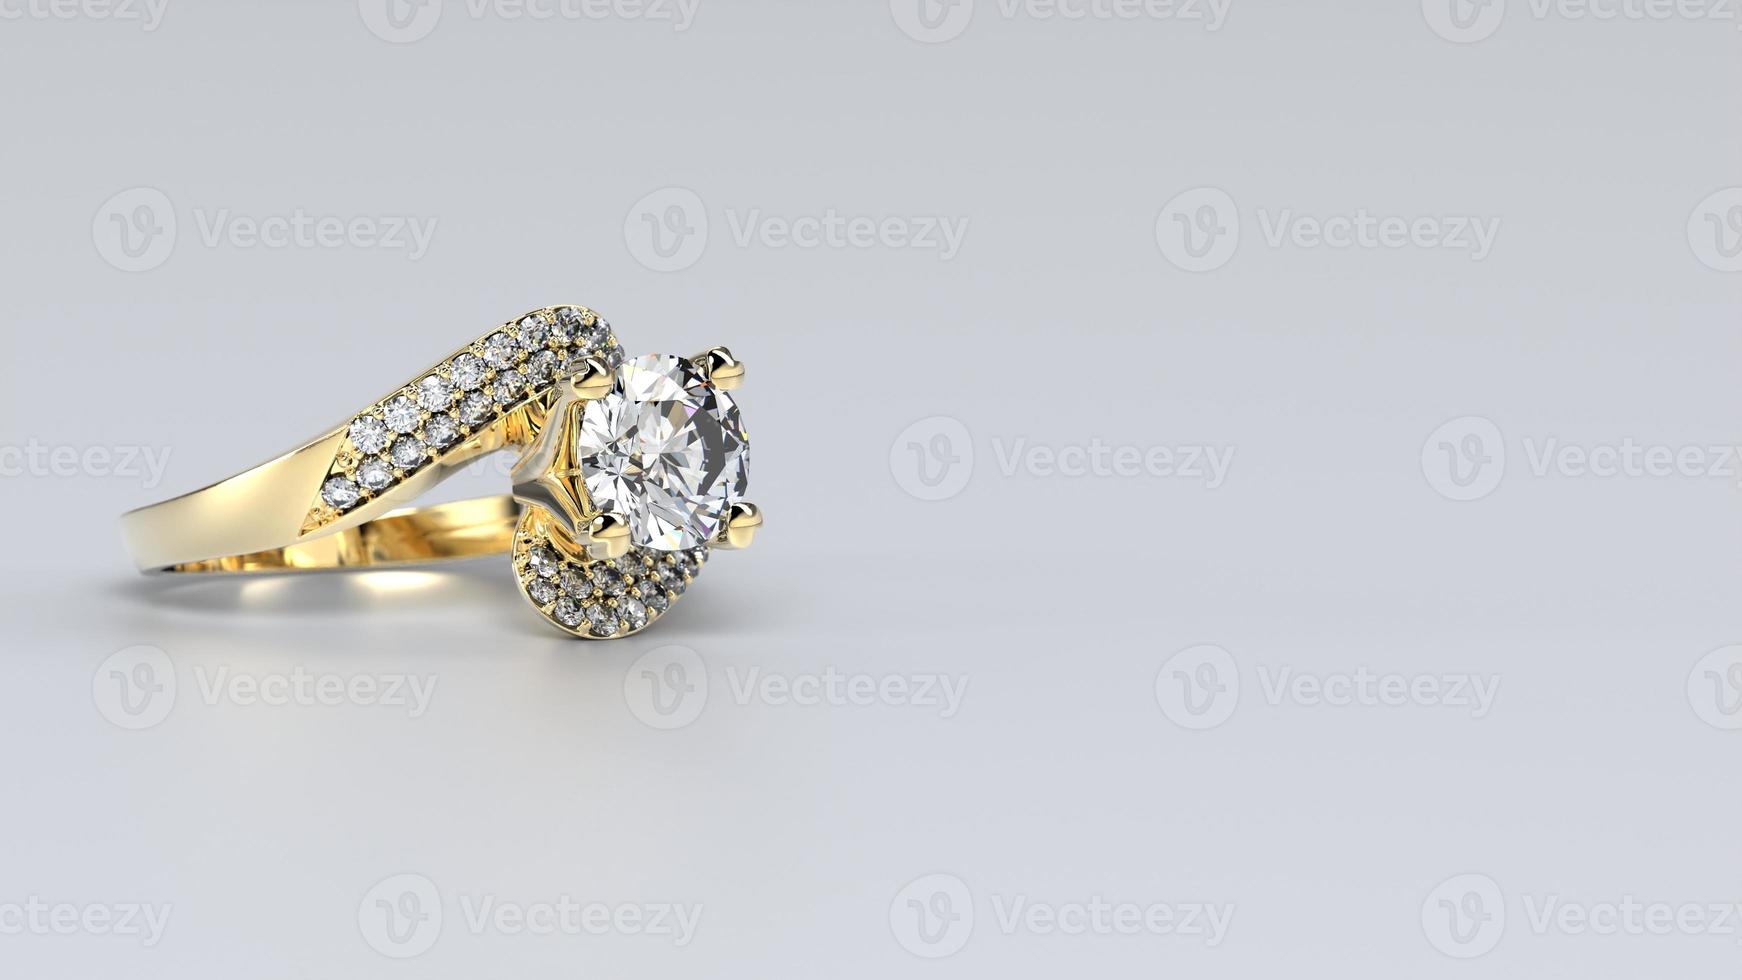 bröllop, ringa, guld, silver, diamant, engagemang, mode, äktenskap, sten, 3d framställa foto